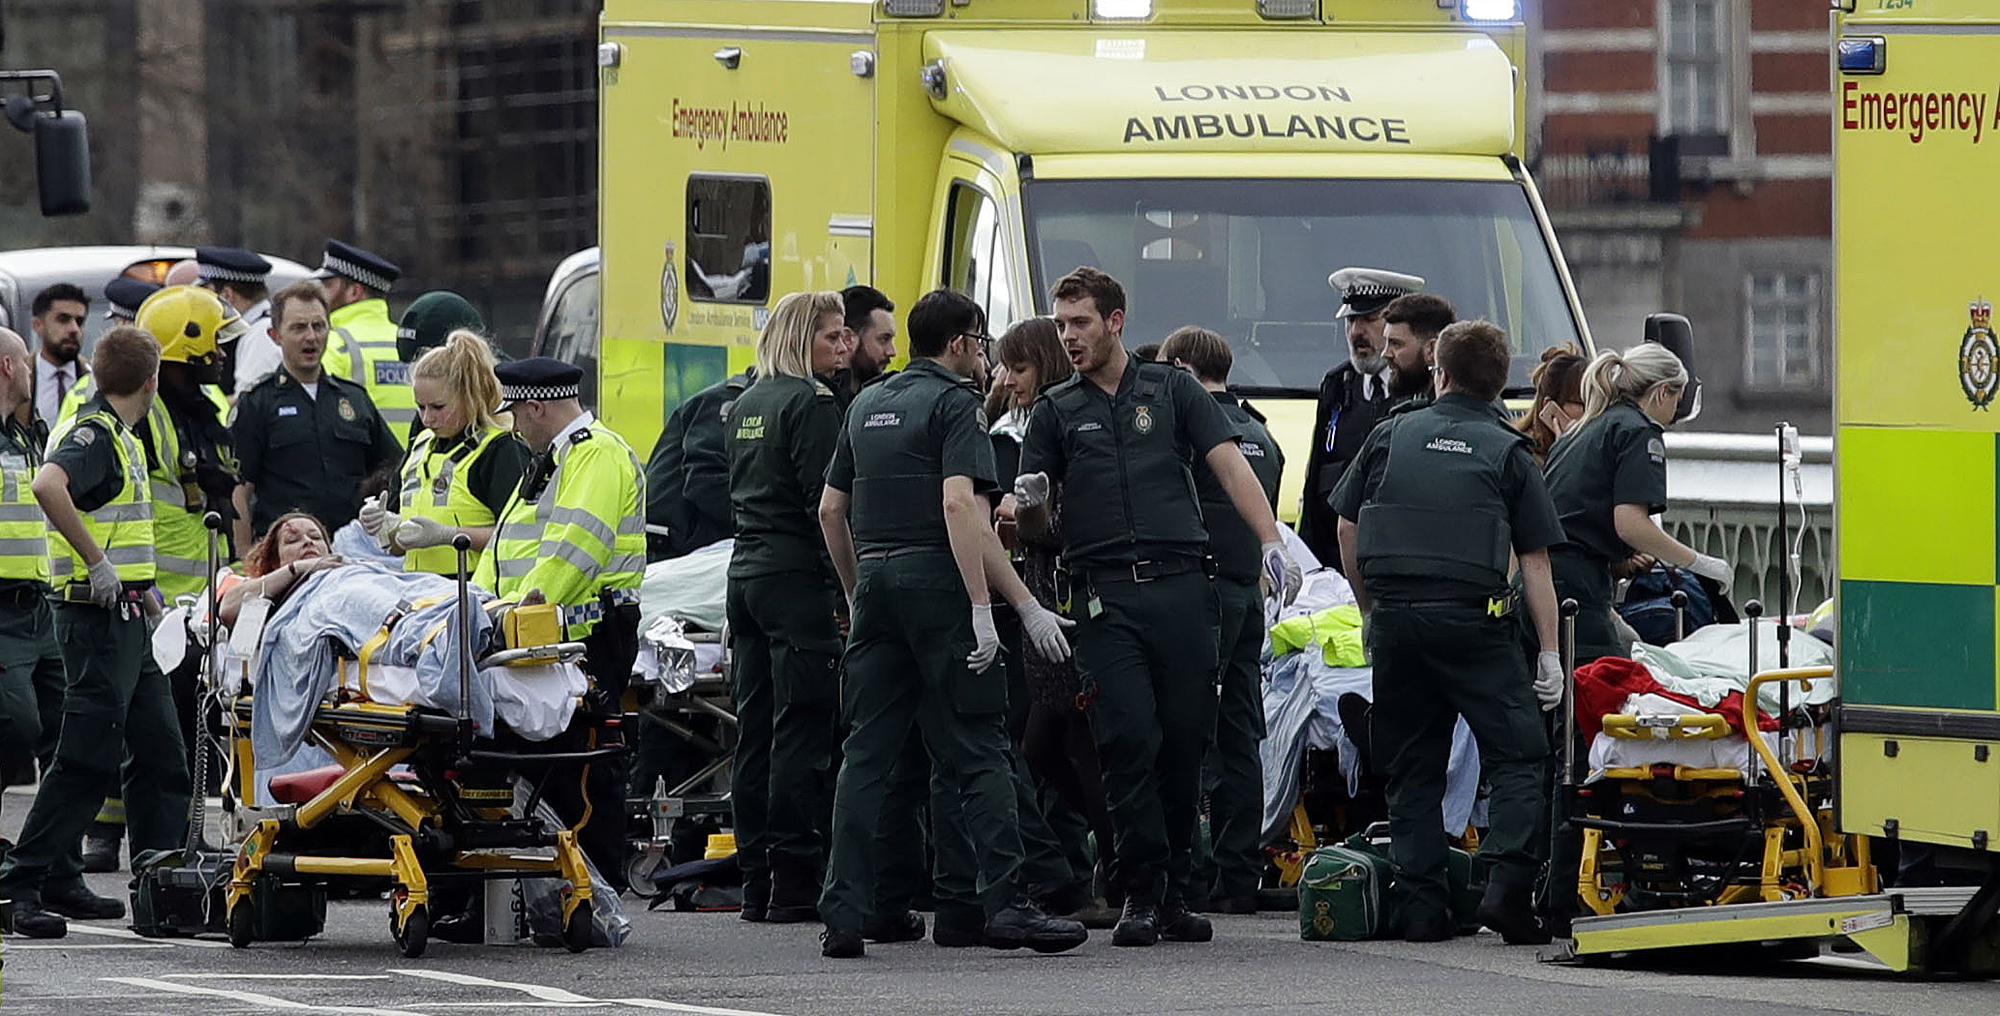 Confirman 4 muertos y 20 heridos tras atentado en Parlamento británico